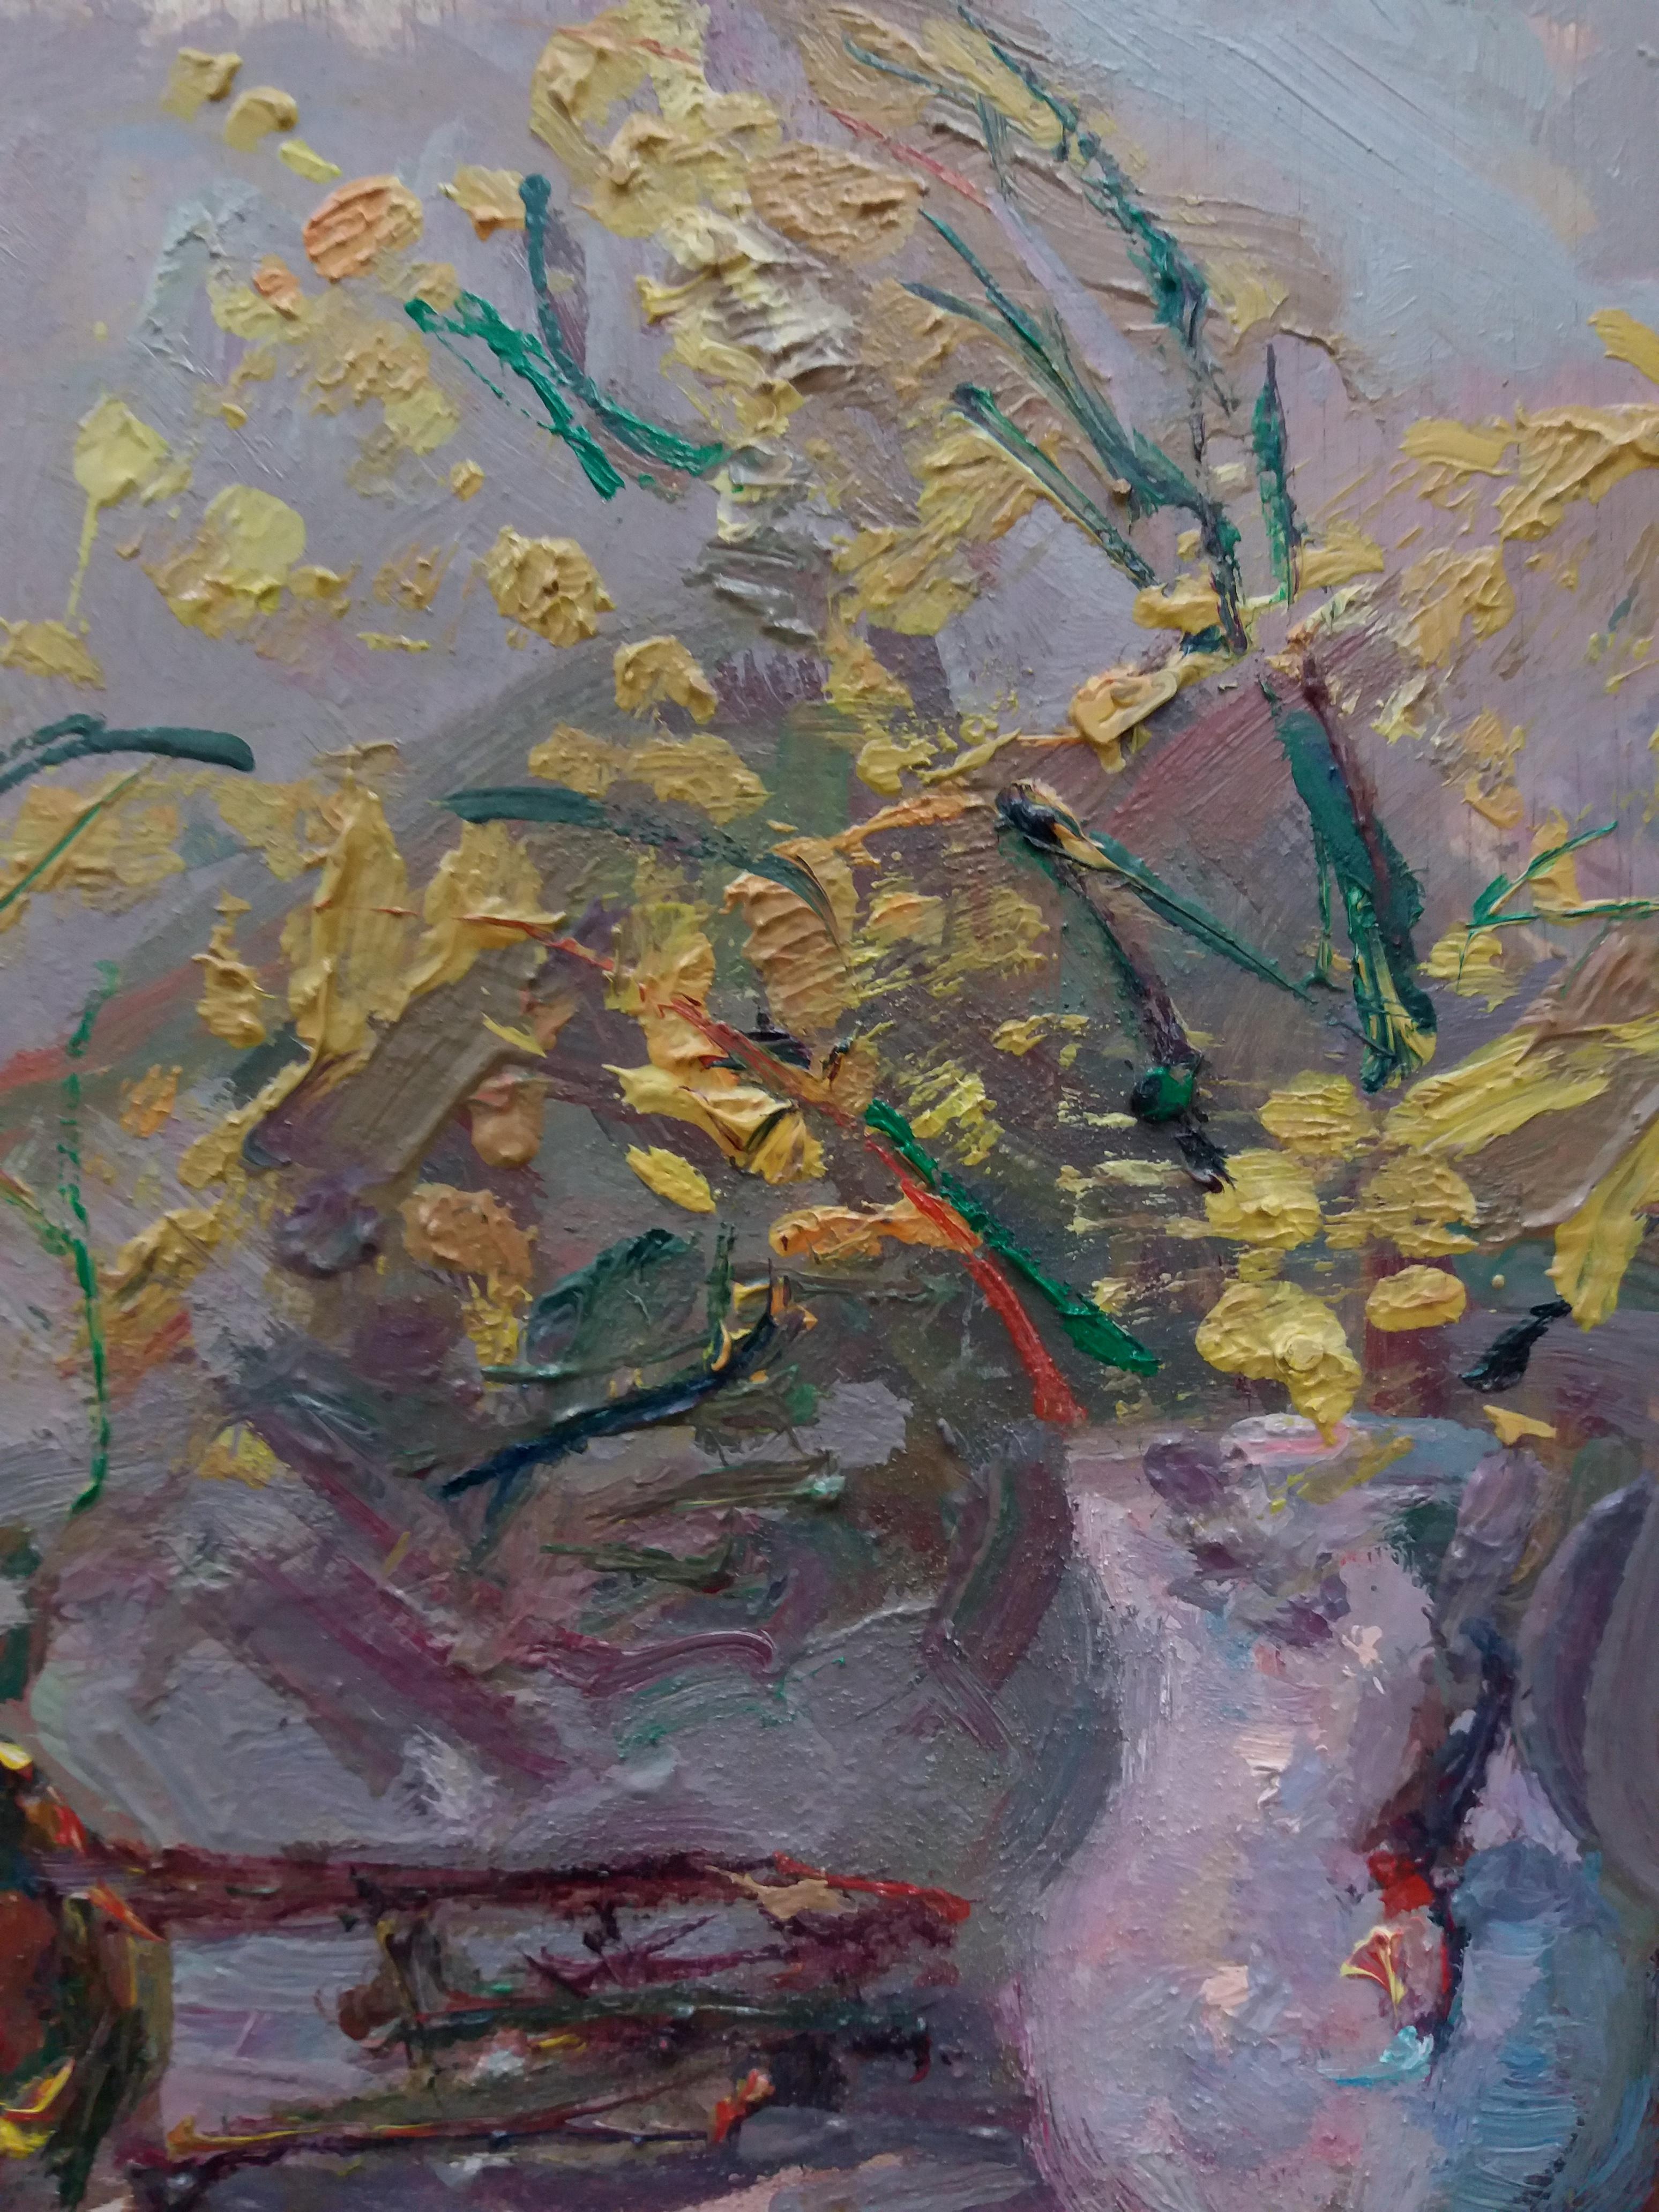 minosaurus et trompette peinture acrylique impressionniste originale.
Sola PUIG, Joan (Barcelone 1950 )

Joan SOLÁ peint de manière naturelle, à l'image des maîtres anciens, en s'imprégnant de la couleur, de l'air, de l'odeur et du parfum pur de son